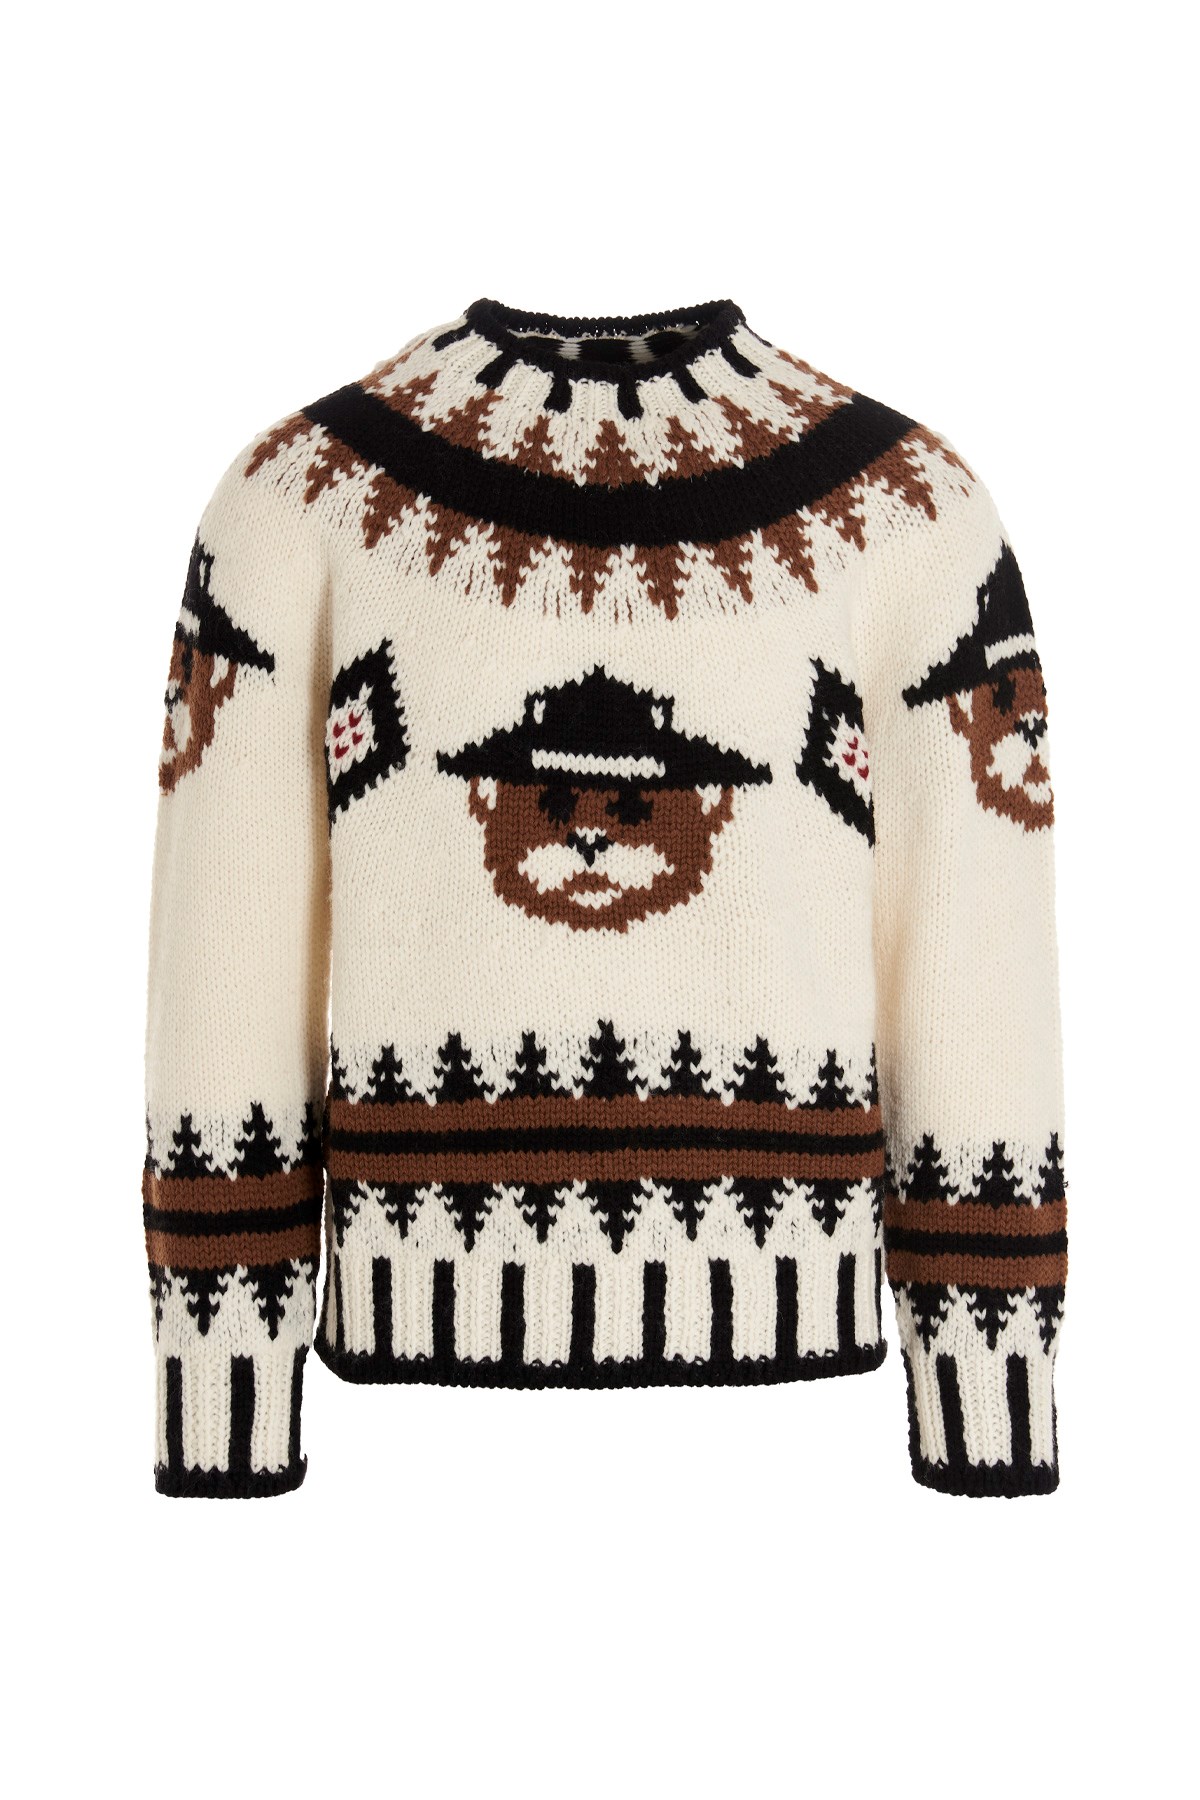 DSQUARED2 'Castoro’ Intarsia Sweater